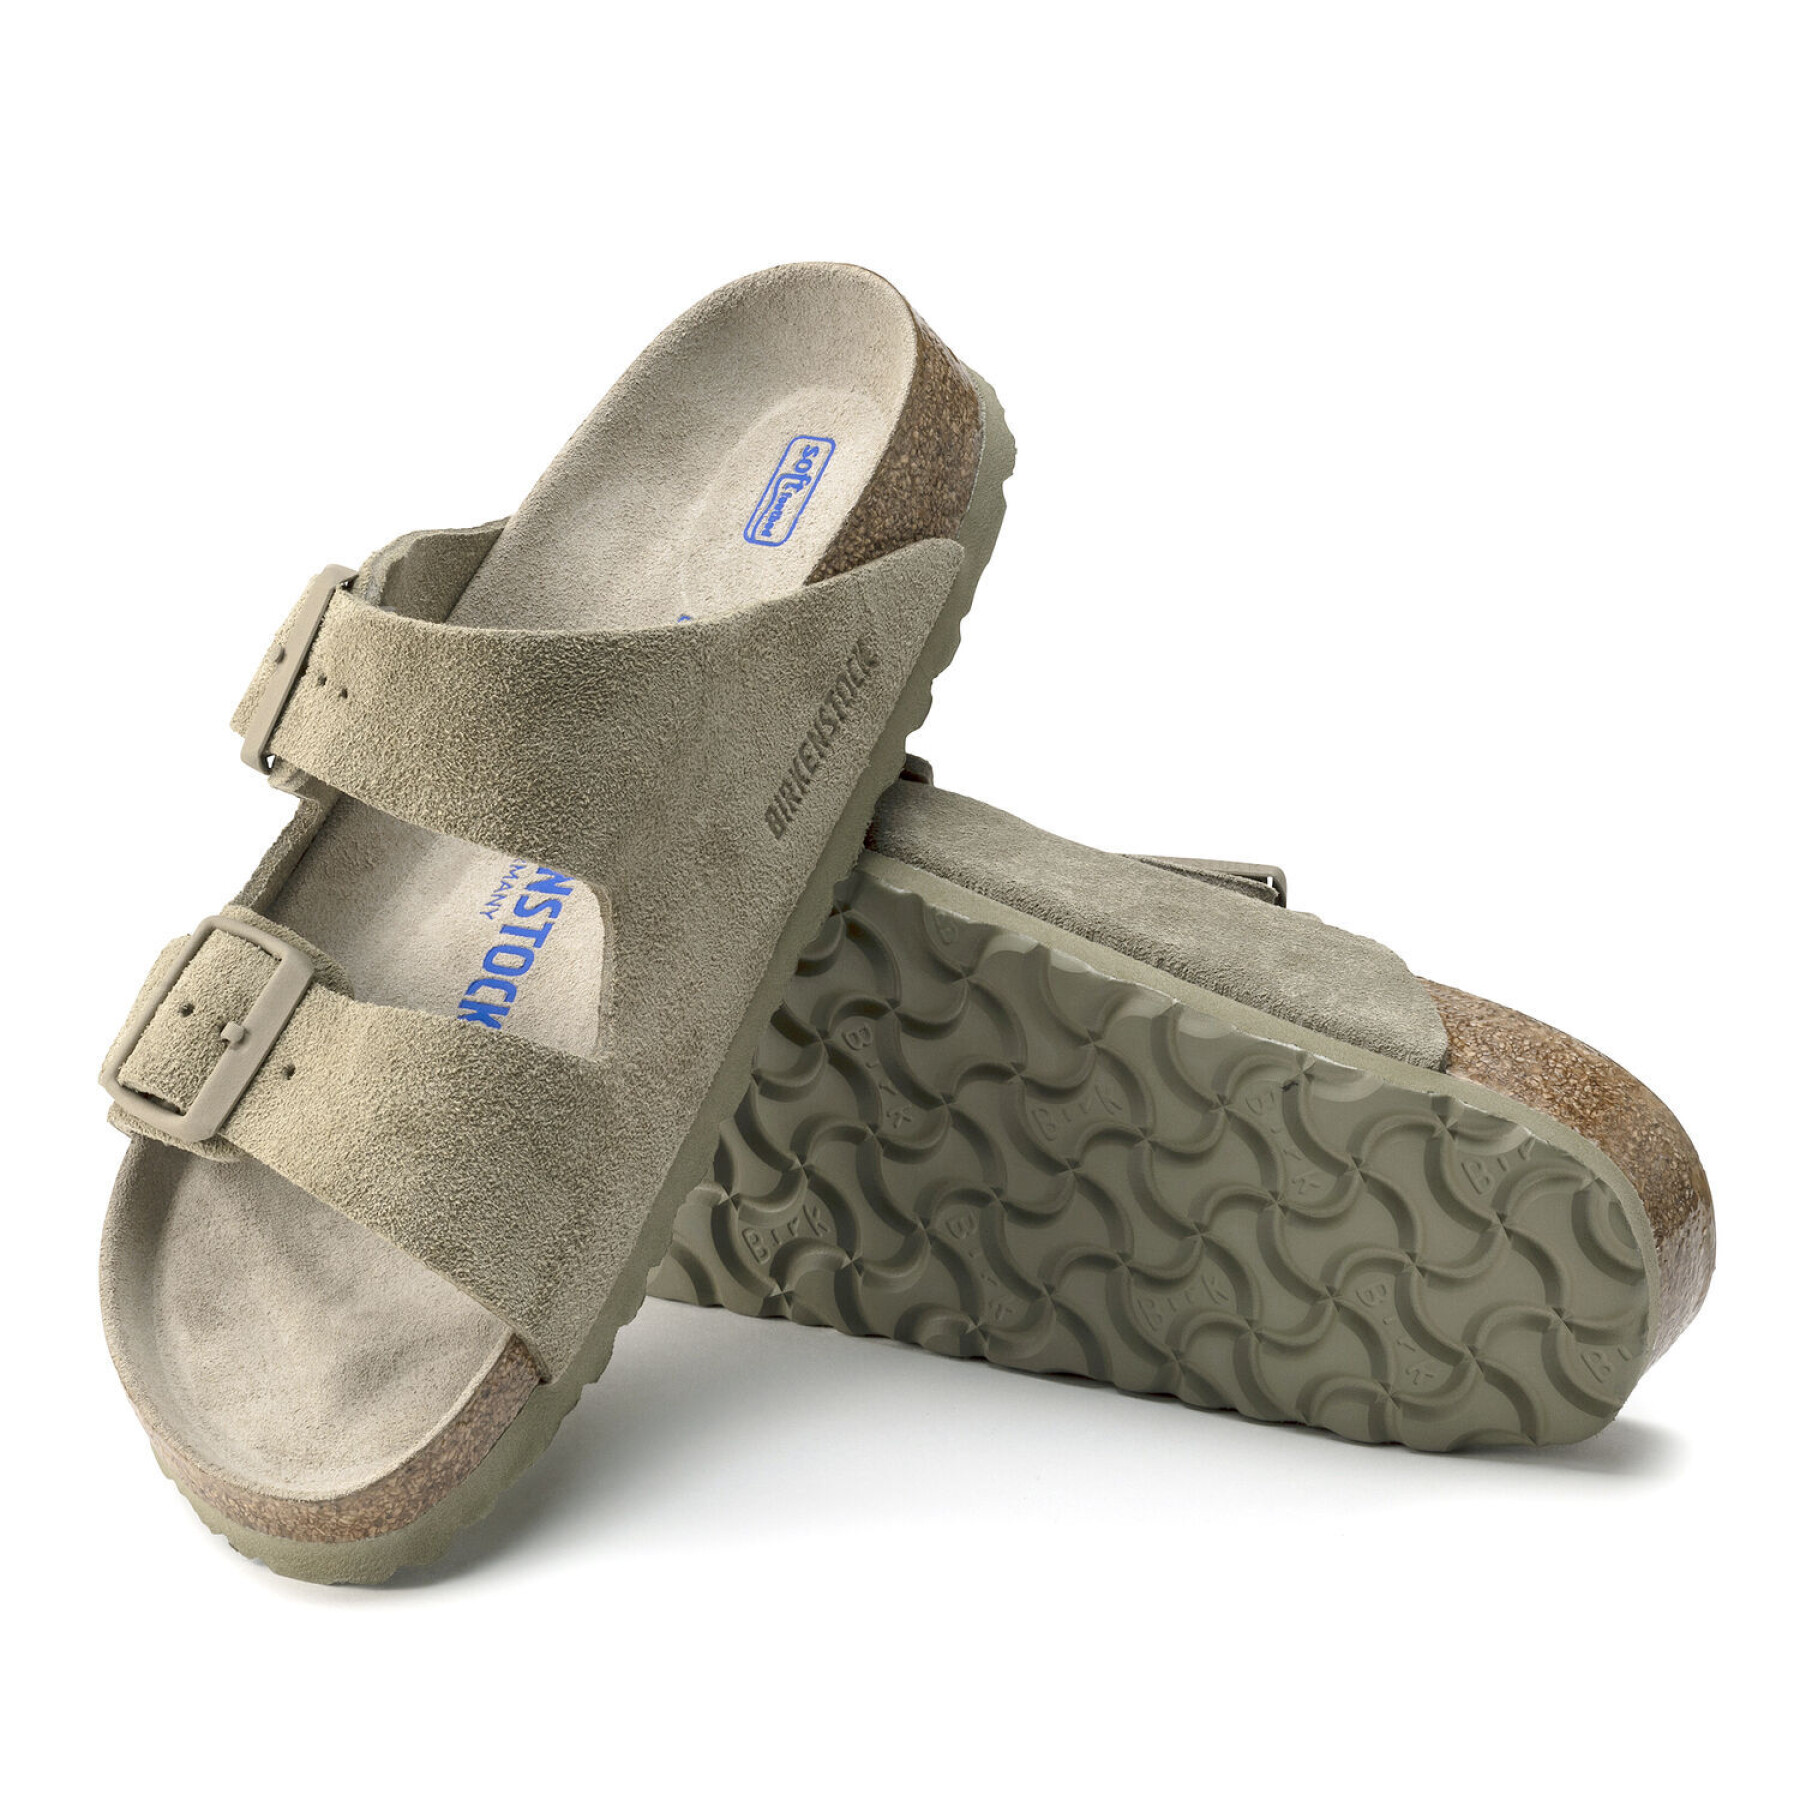 Leather sandals Birkenstock Arizona Suede